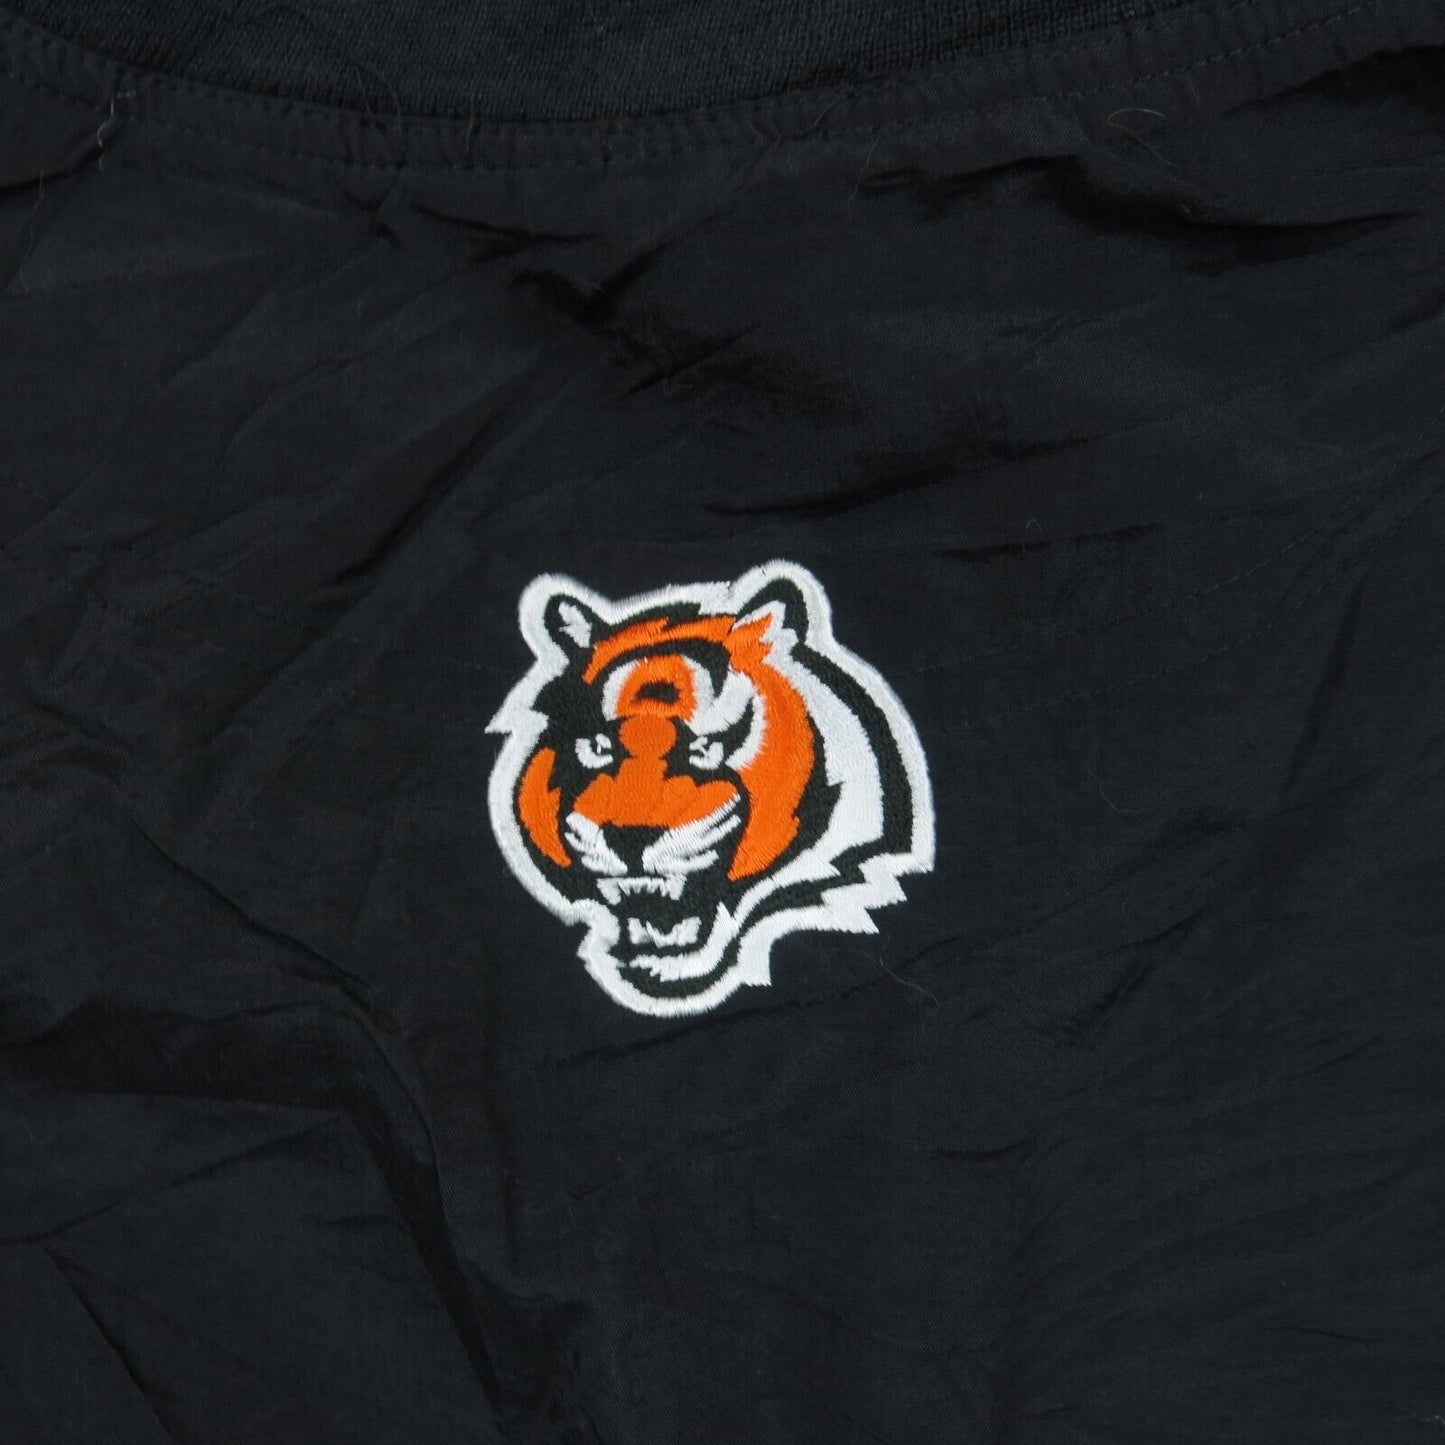 NFL Mens Sports Jacket Long Sleeves Pullover V Neck Logo Black Size X Large